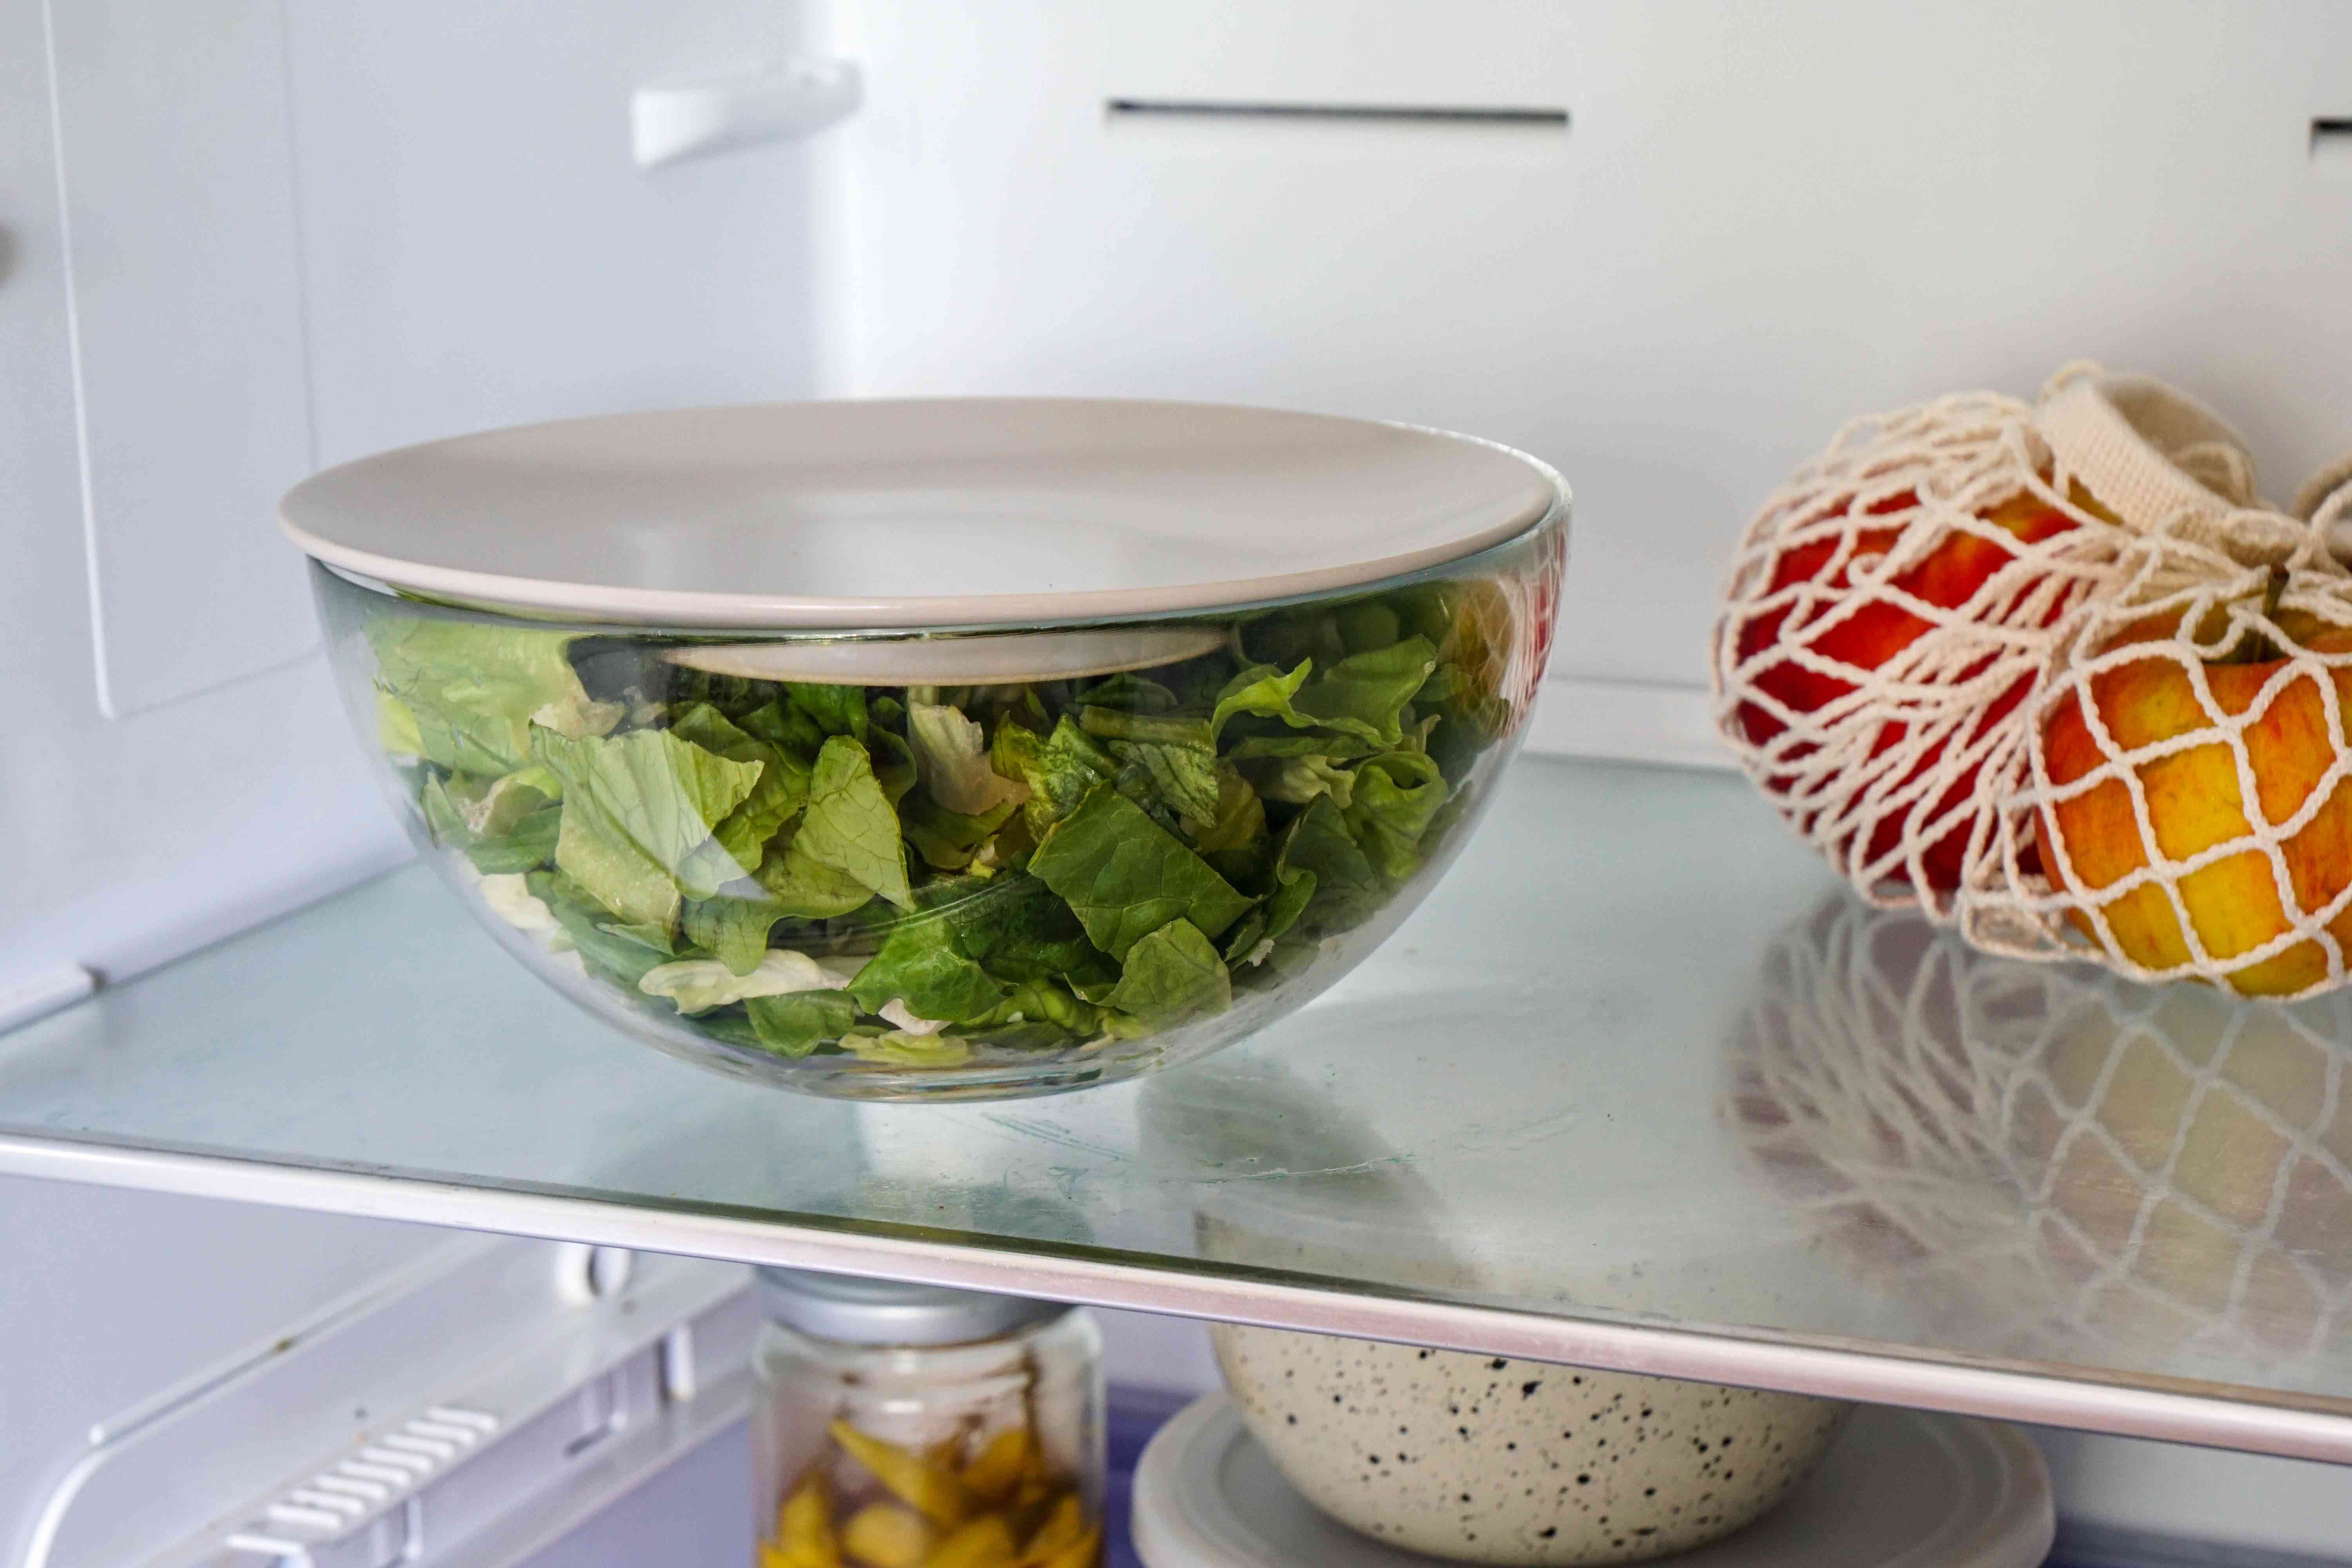 盛满生菜的玻璃碗，用盘子作为盖子储存在冰箱里